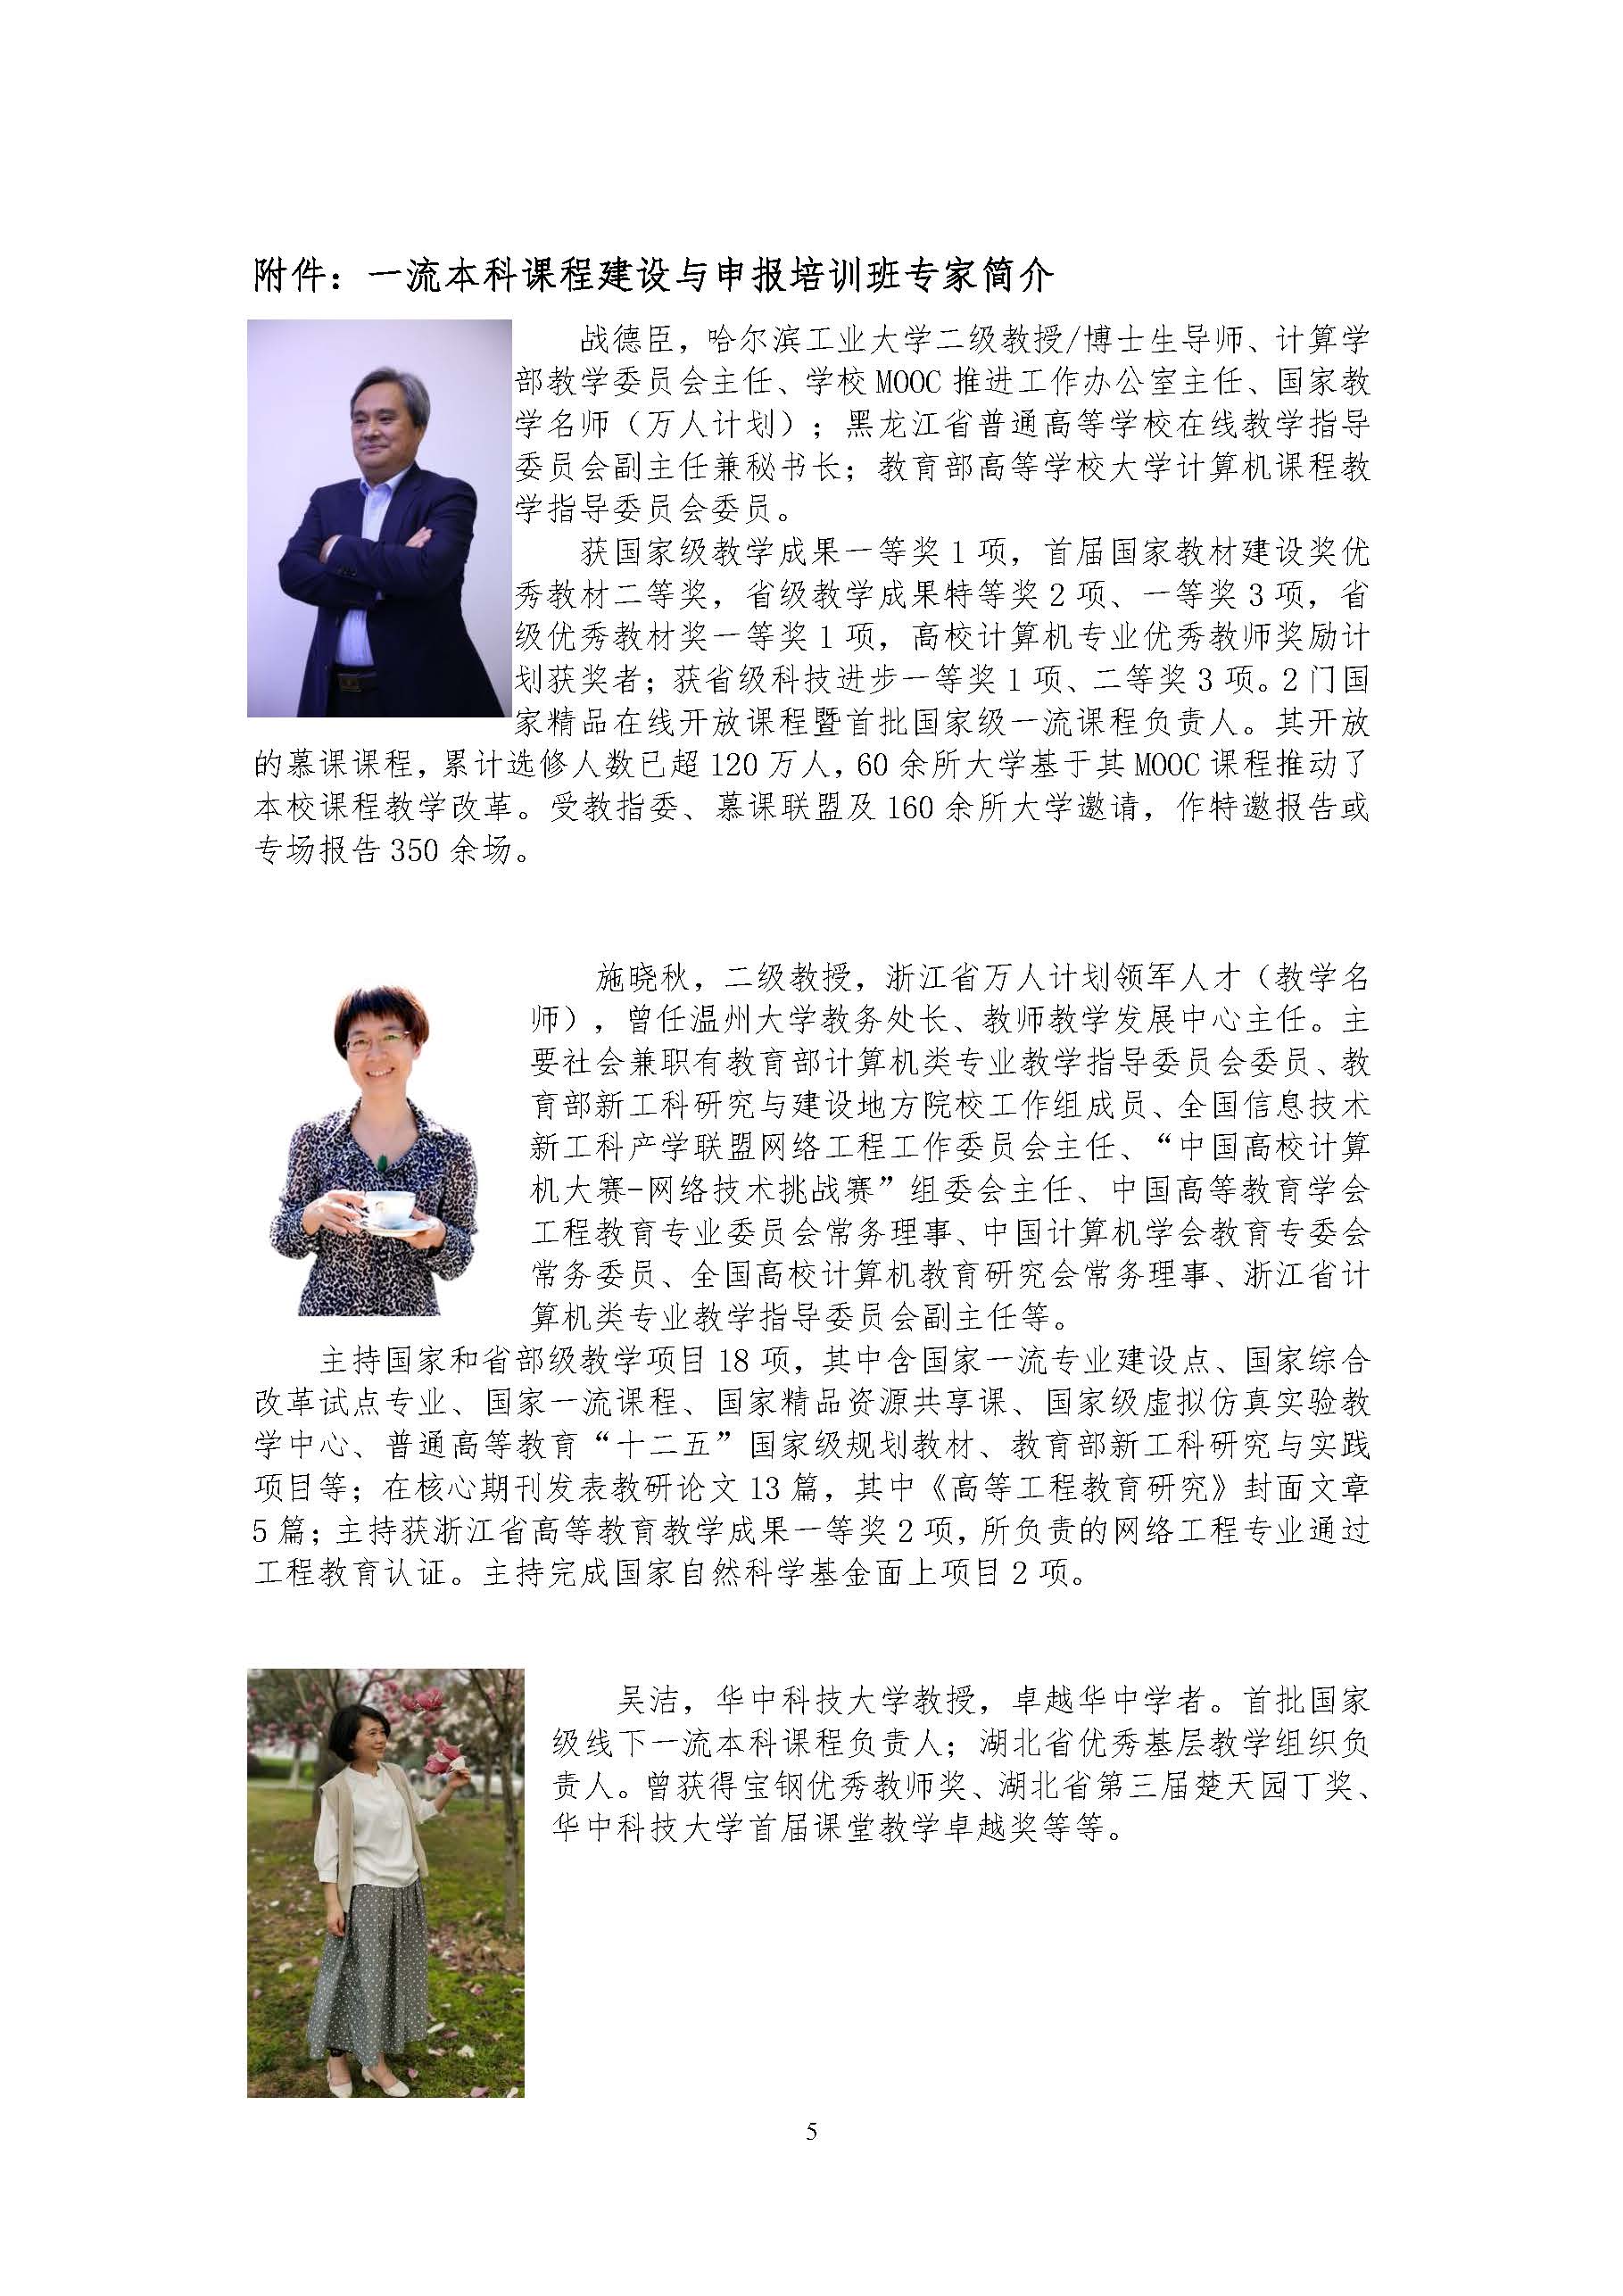 （会议邀请）湖北省高等教育学会一流本科课程会议通知建设与申报_页面_5.jpg